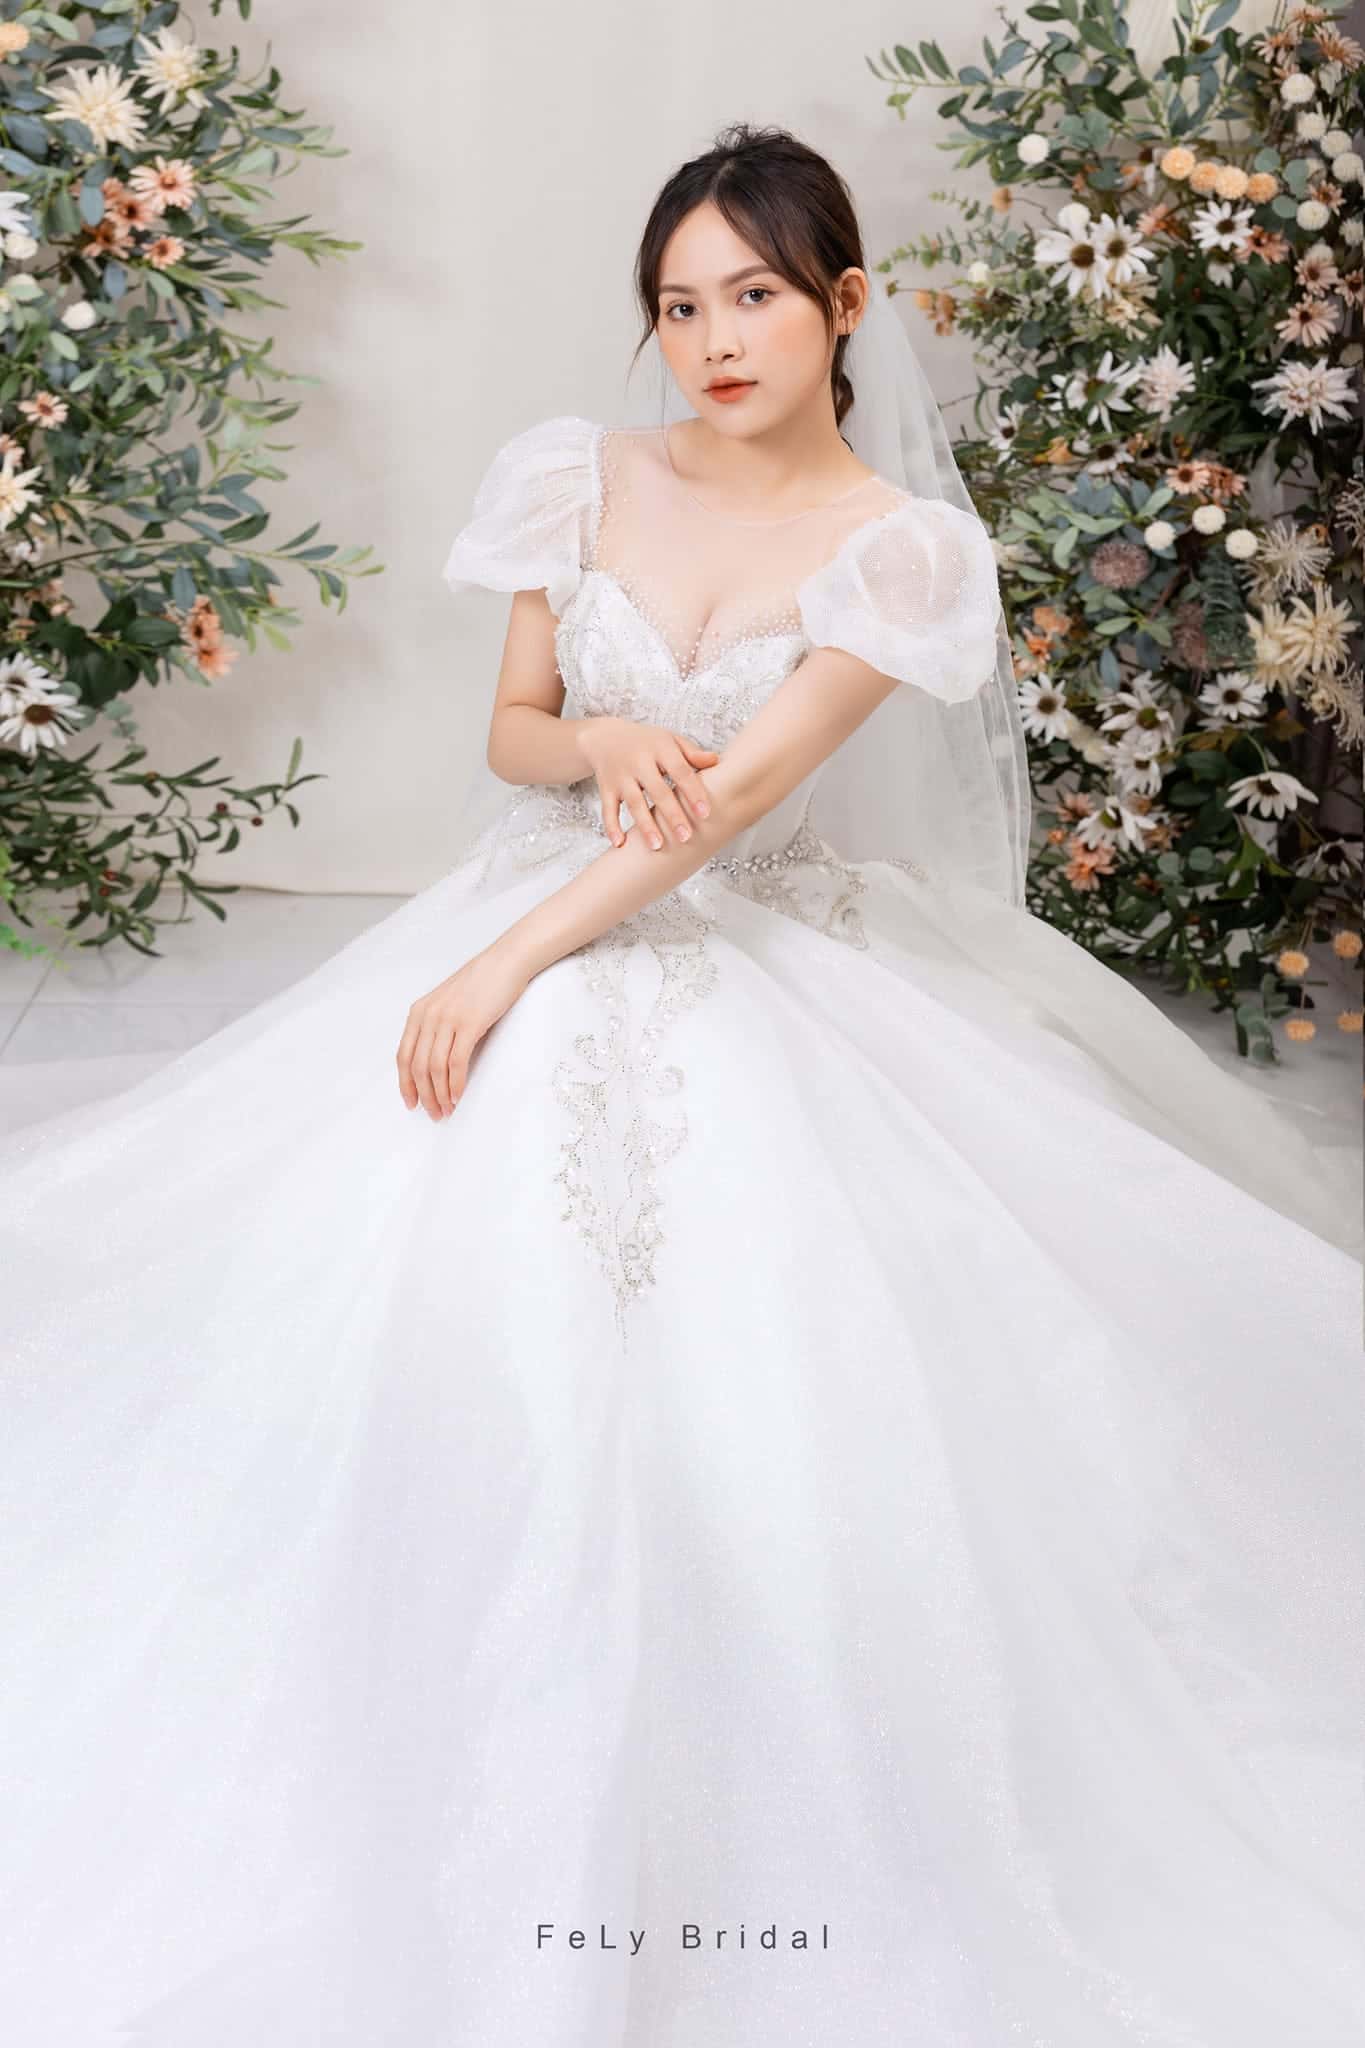 Tú Vi sẽ diện 4 chiếc váy cưới trong lễ kết hôn